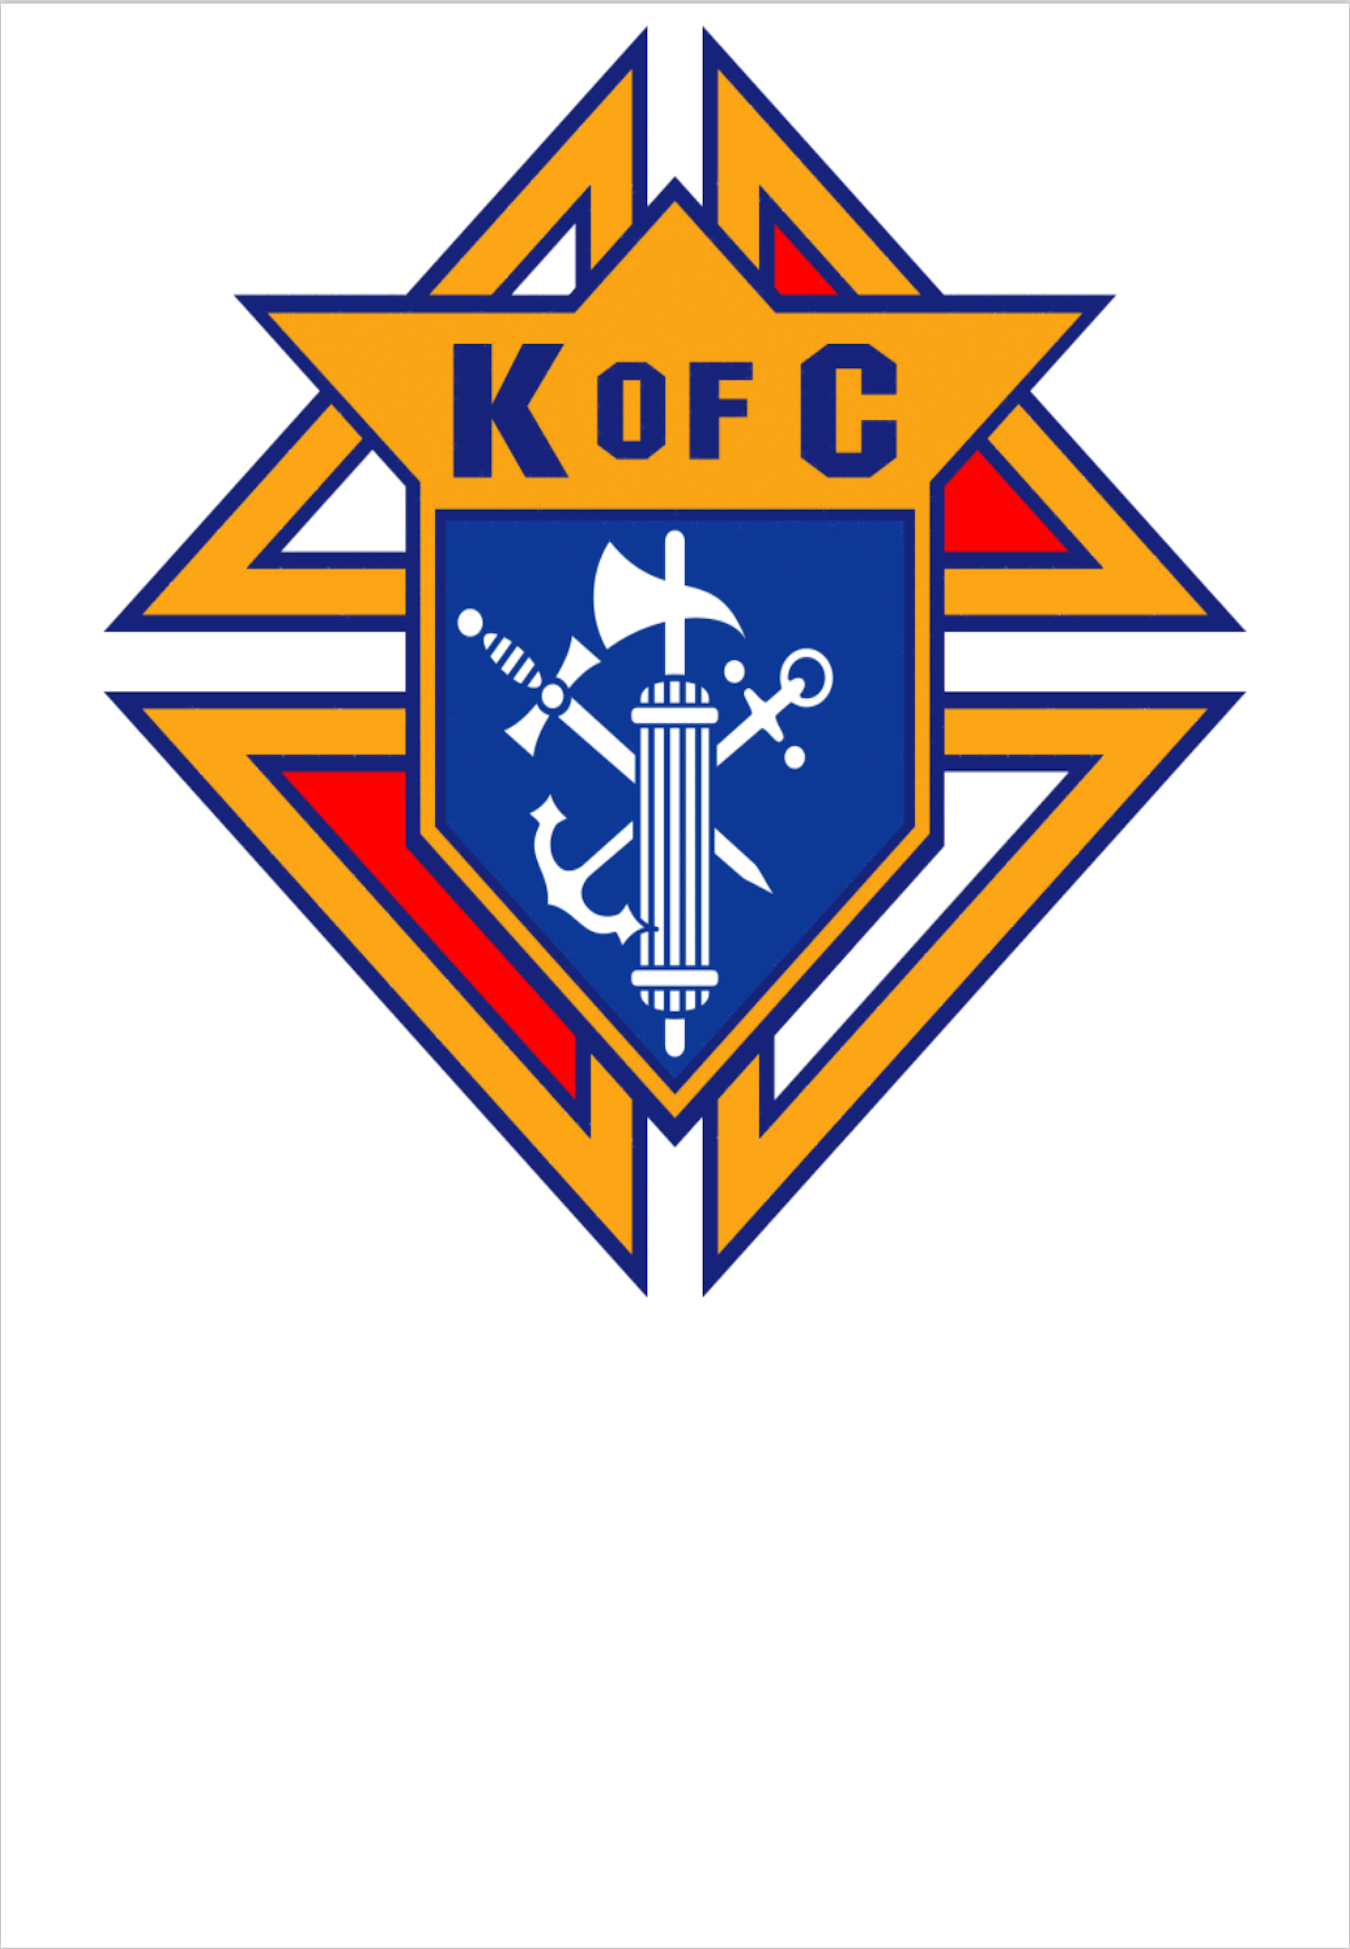 KofC Logo - Council History – Andover Knights of Columbus